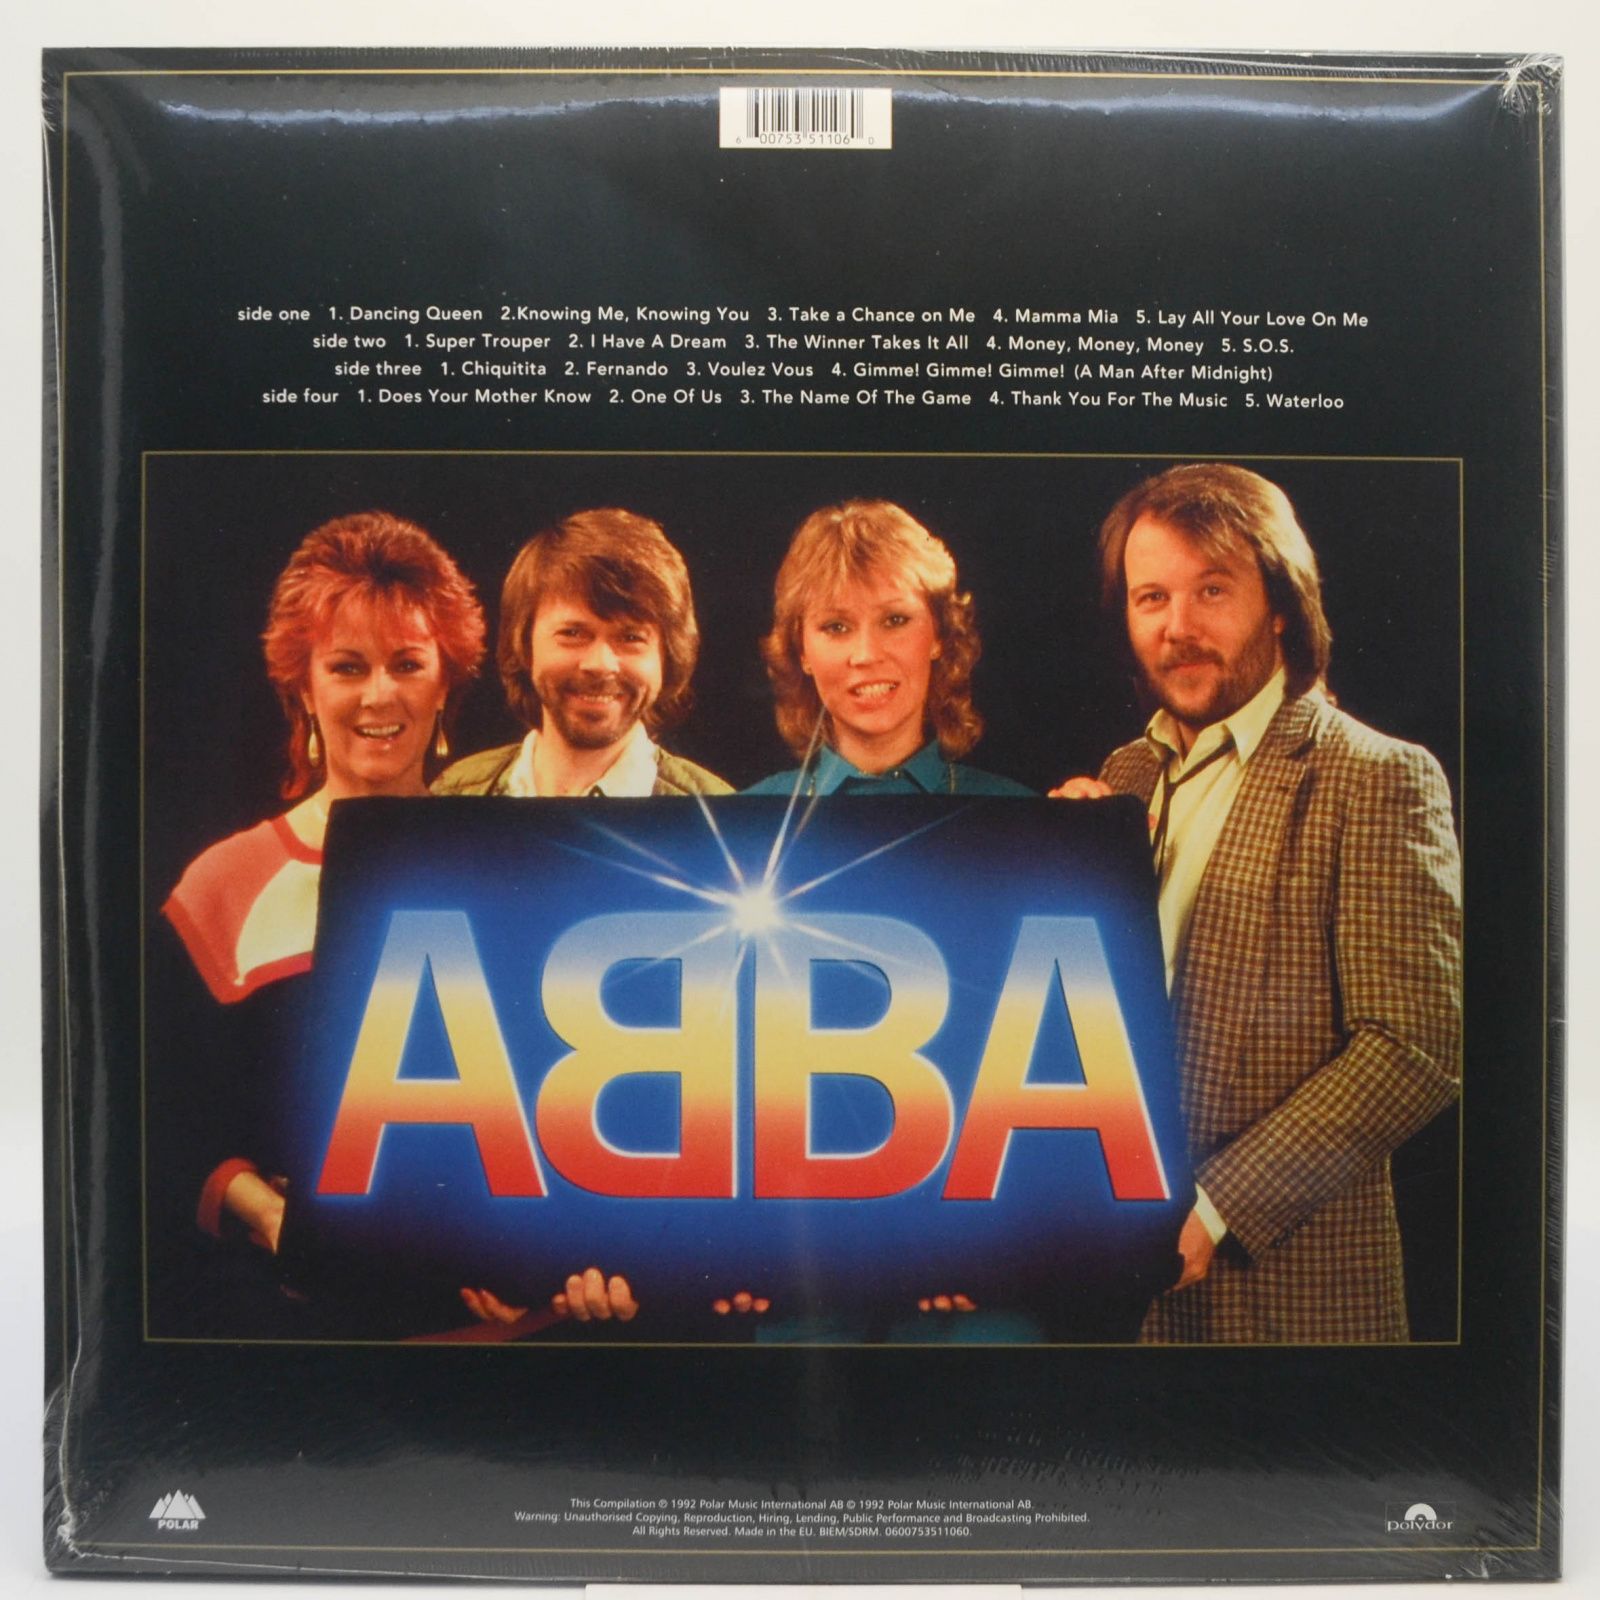 ABBA — Gold (2LP), 1992